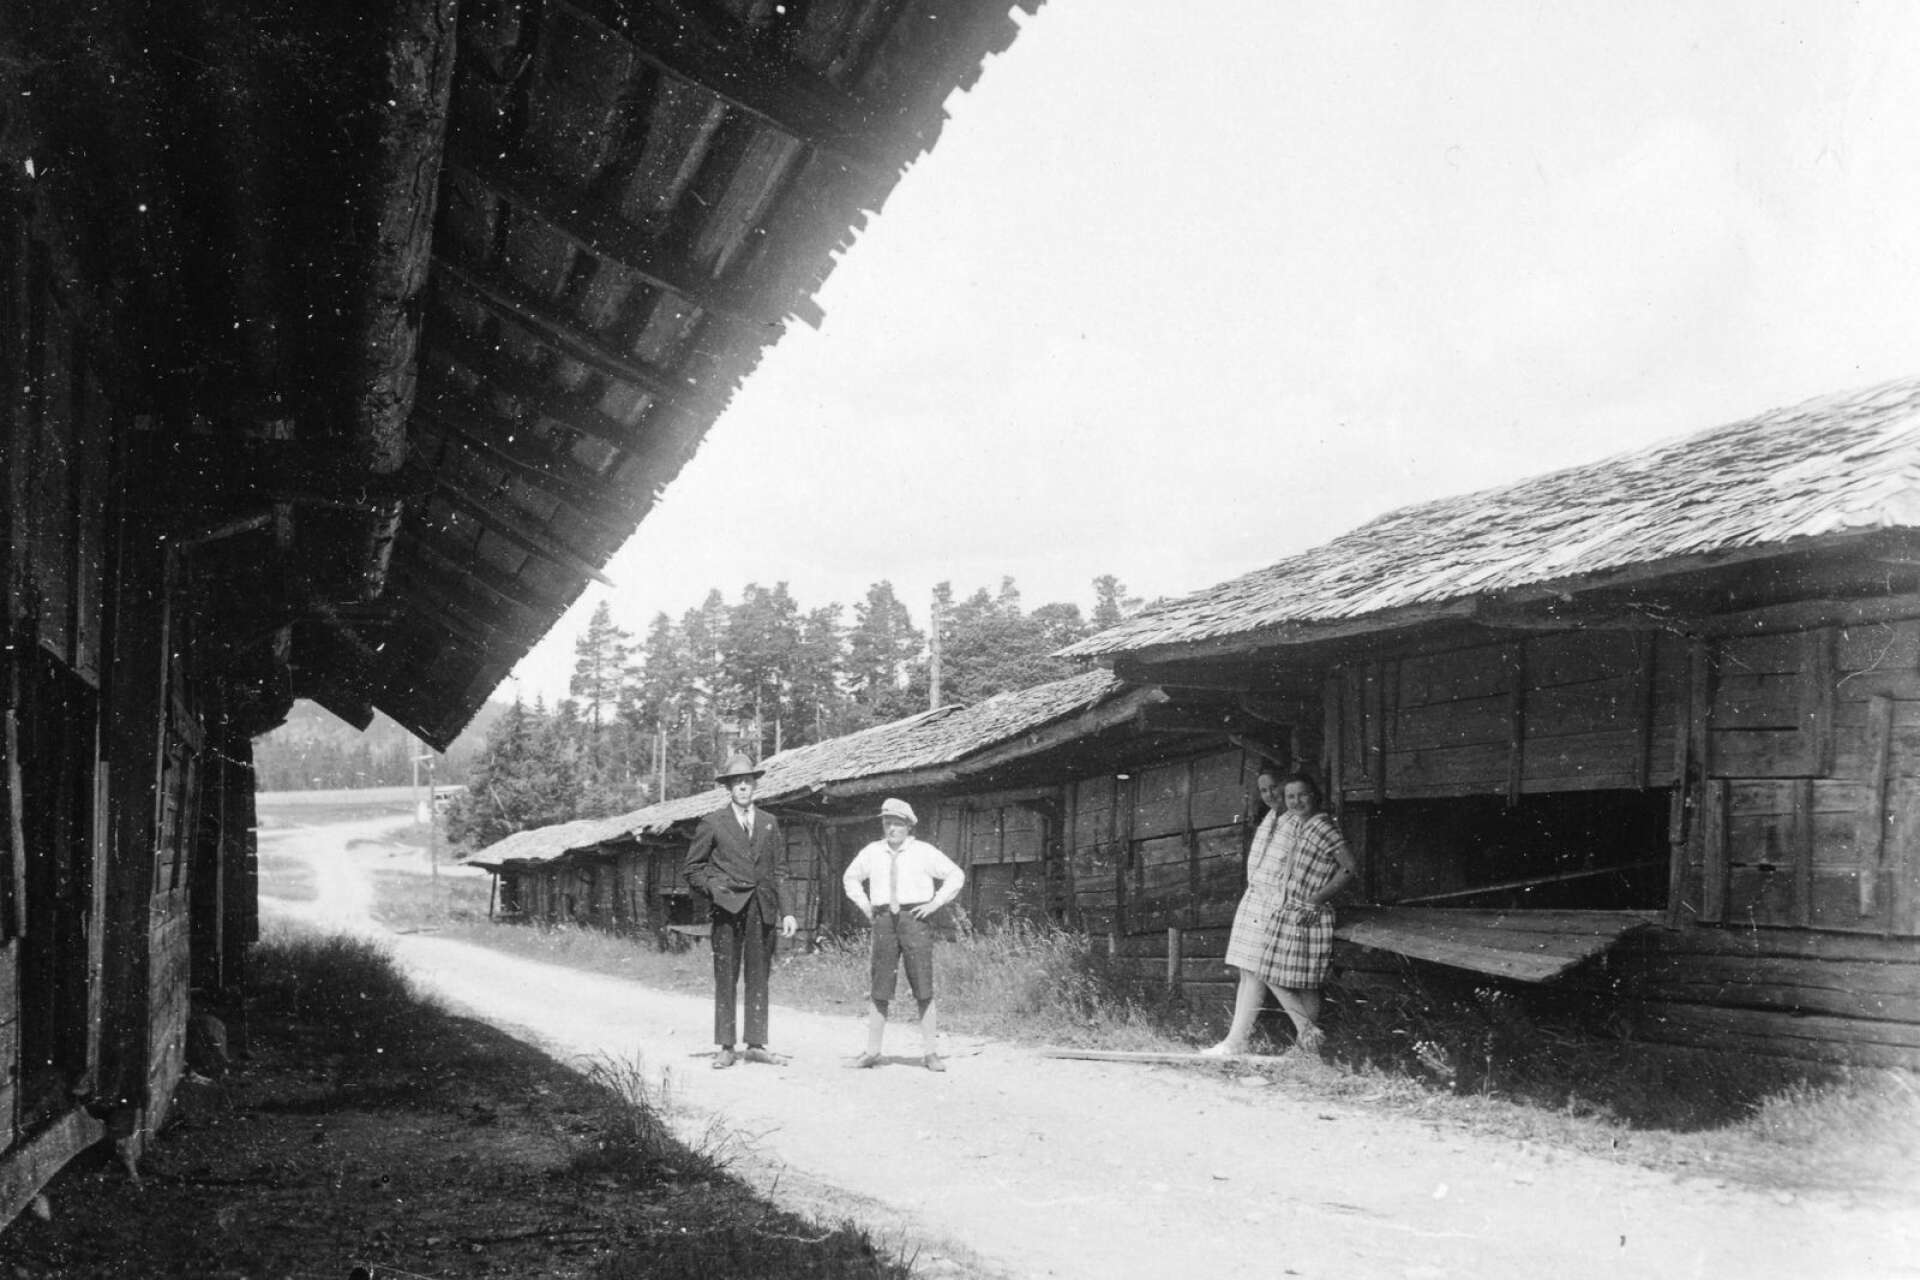 En bild av bodarna från 1929, när de hade sticktak. Bodarna hade använts flitigt i över 150 år och var slitna men fungerande. Bild med tillstånd från Nyeds Hembygdsförening, via Wermlandsbilder.